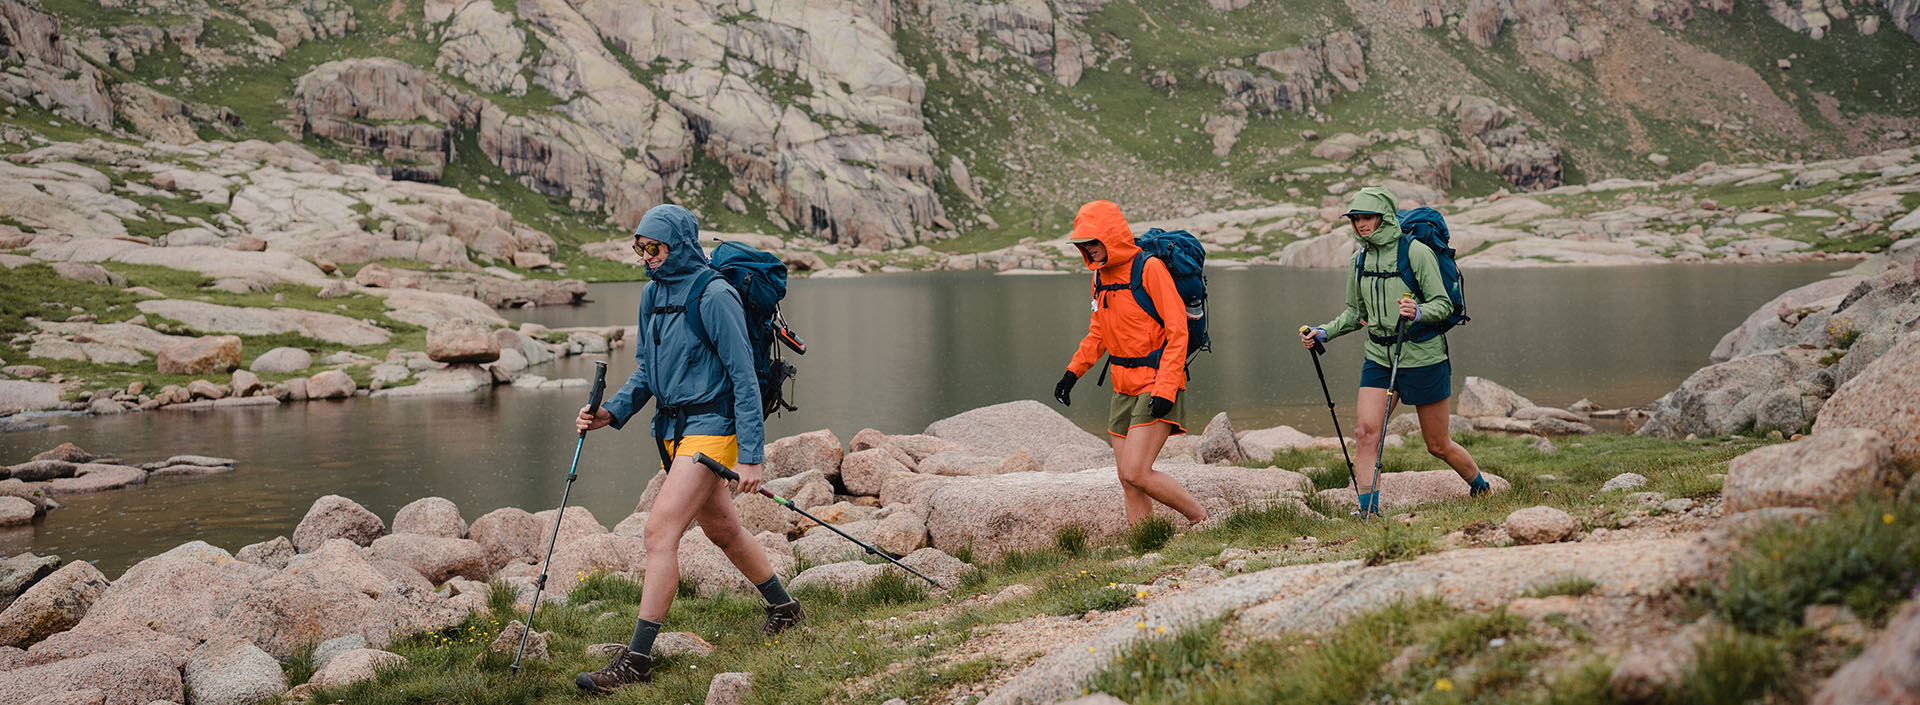 troje ludzi w kurtkach przeciwdeszczowych idzie brzegiem górskiego jeziora